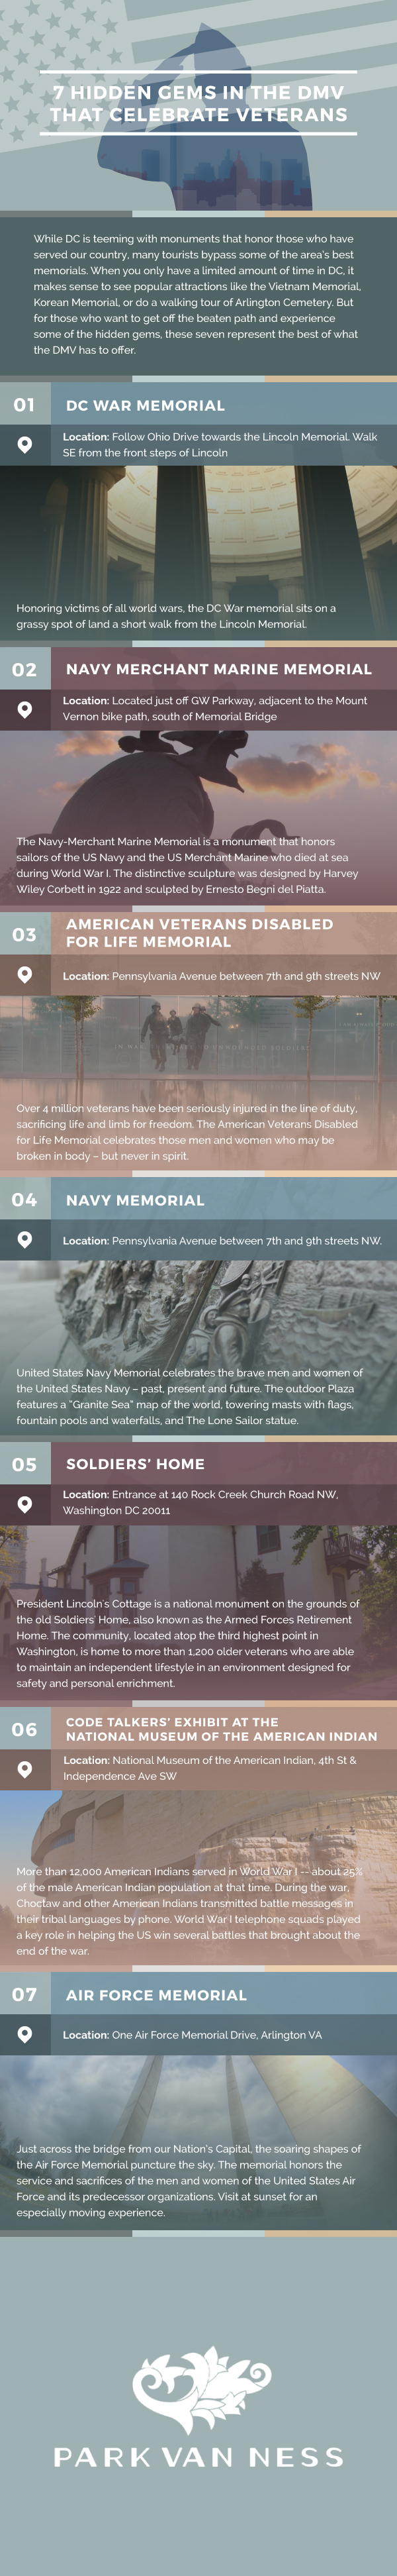 pvn-veterans-locations-3